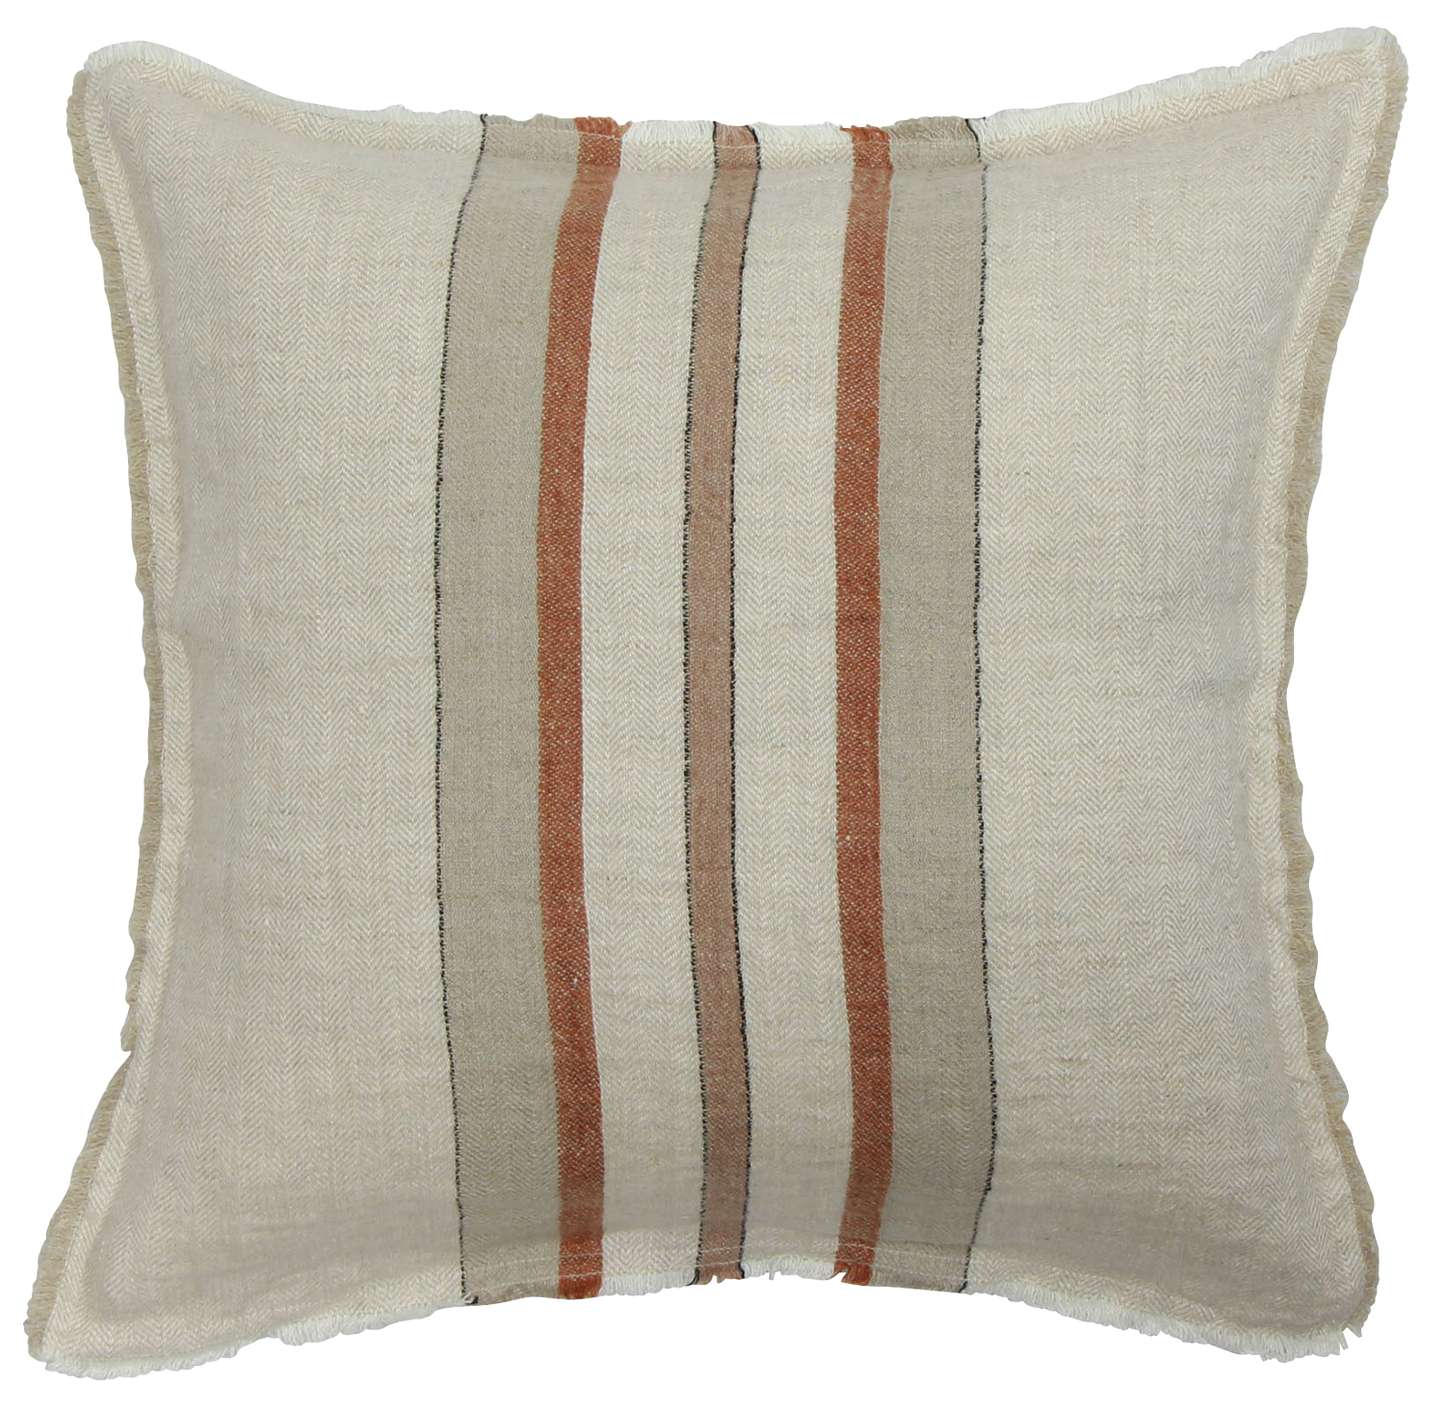 Herringbone striped cushion cover 50cm